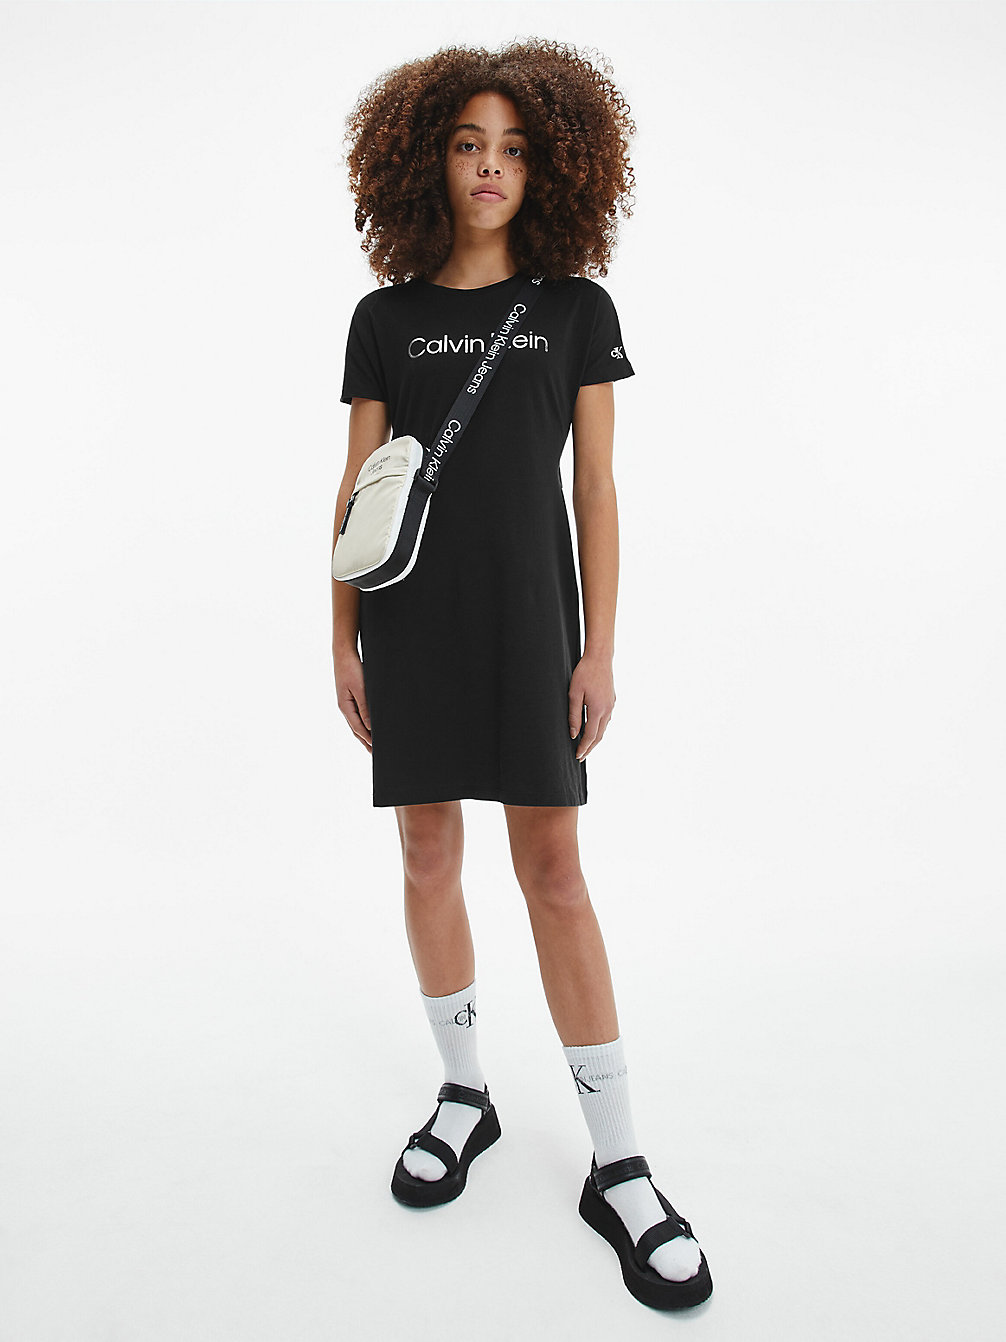 CK BLACK > Платье-футболка с логотипом цвета металлик > undefined девочки - Calvin Klein